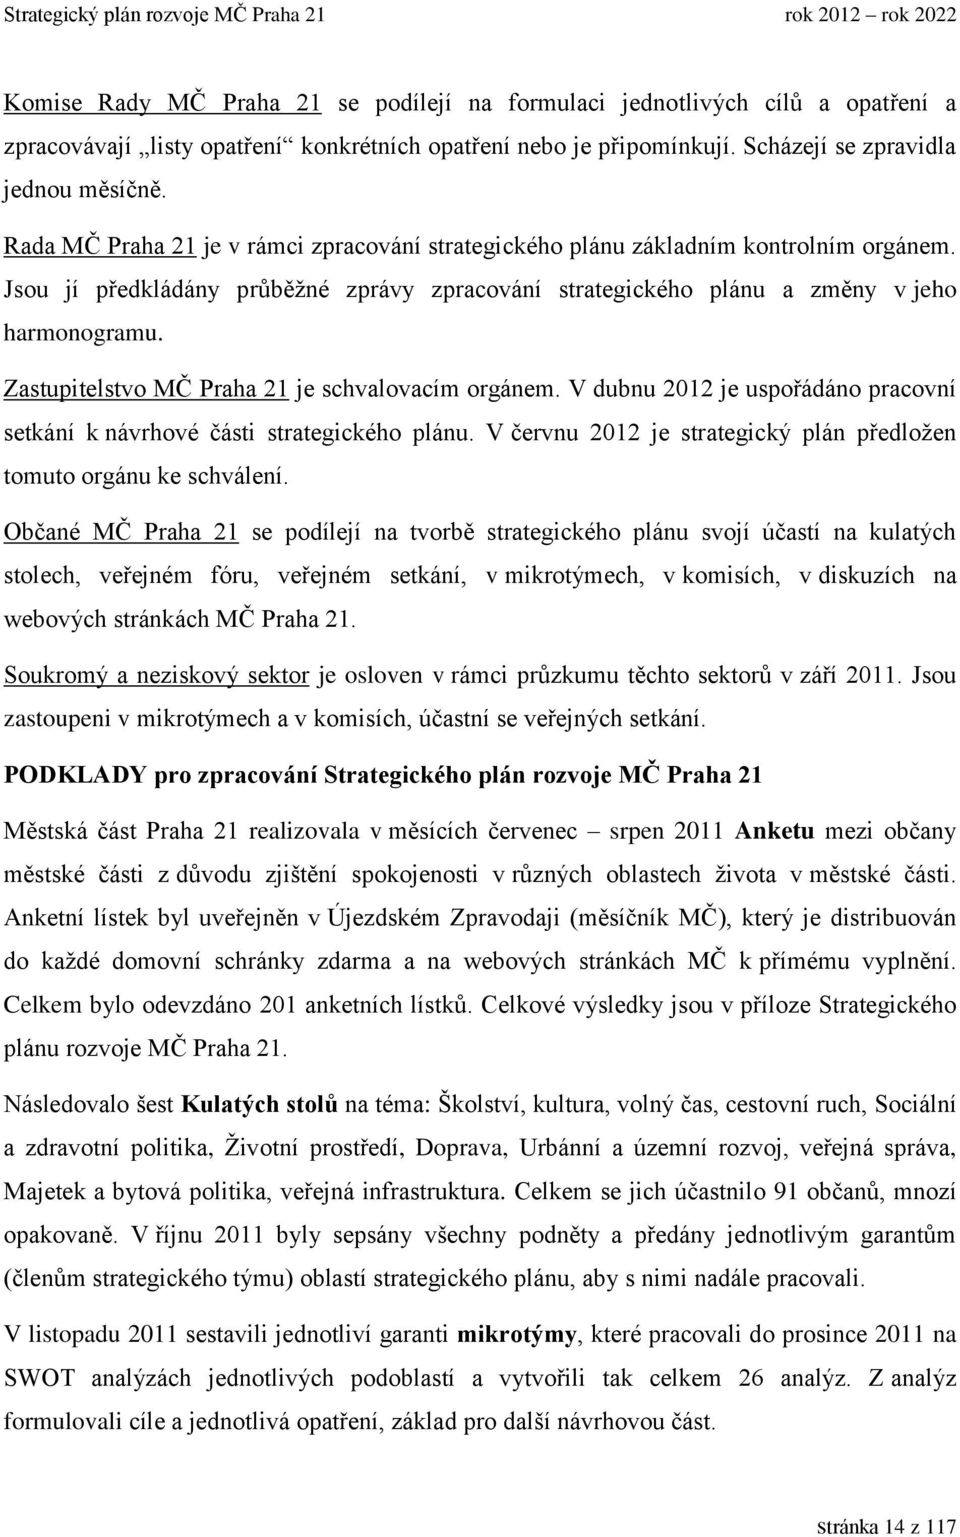 Zastupitelstvo MČ Praha 21 je schvalovacím orgánem. V dubnu 2012 je uspořádáno pracovní setkání k návrhové části strategického plánu.